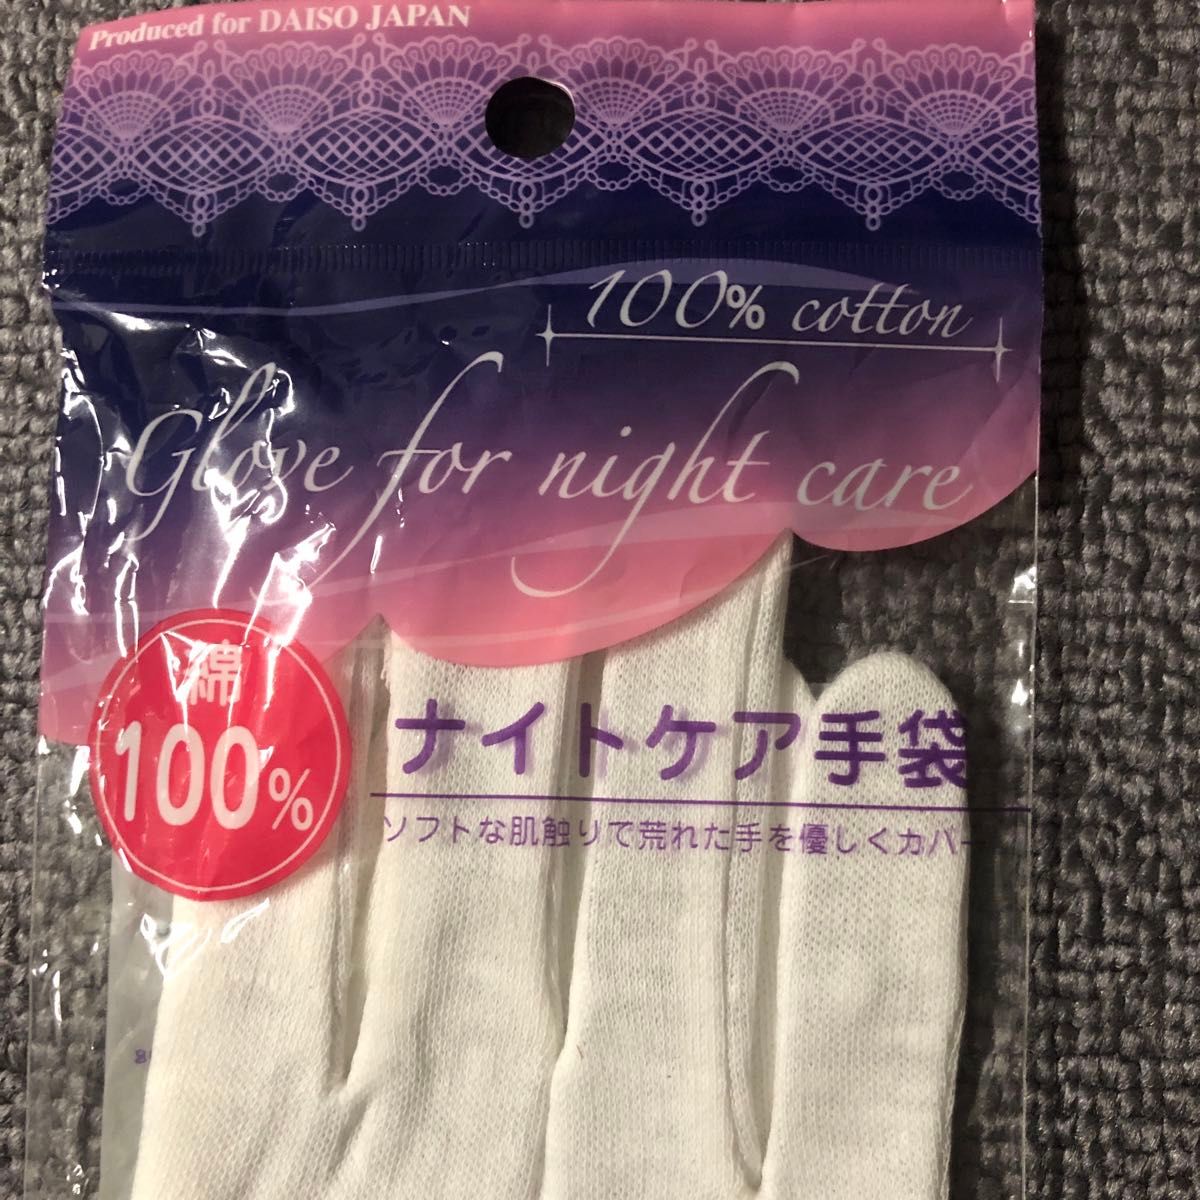 ナイトケア手袋 ダイソー 2個セット 綿100%